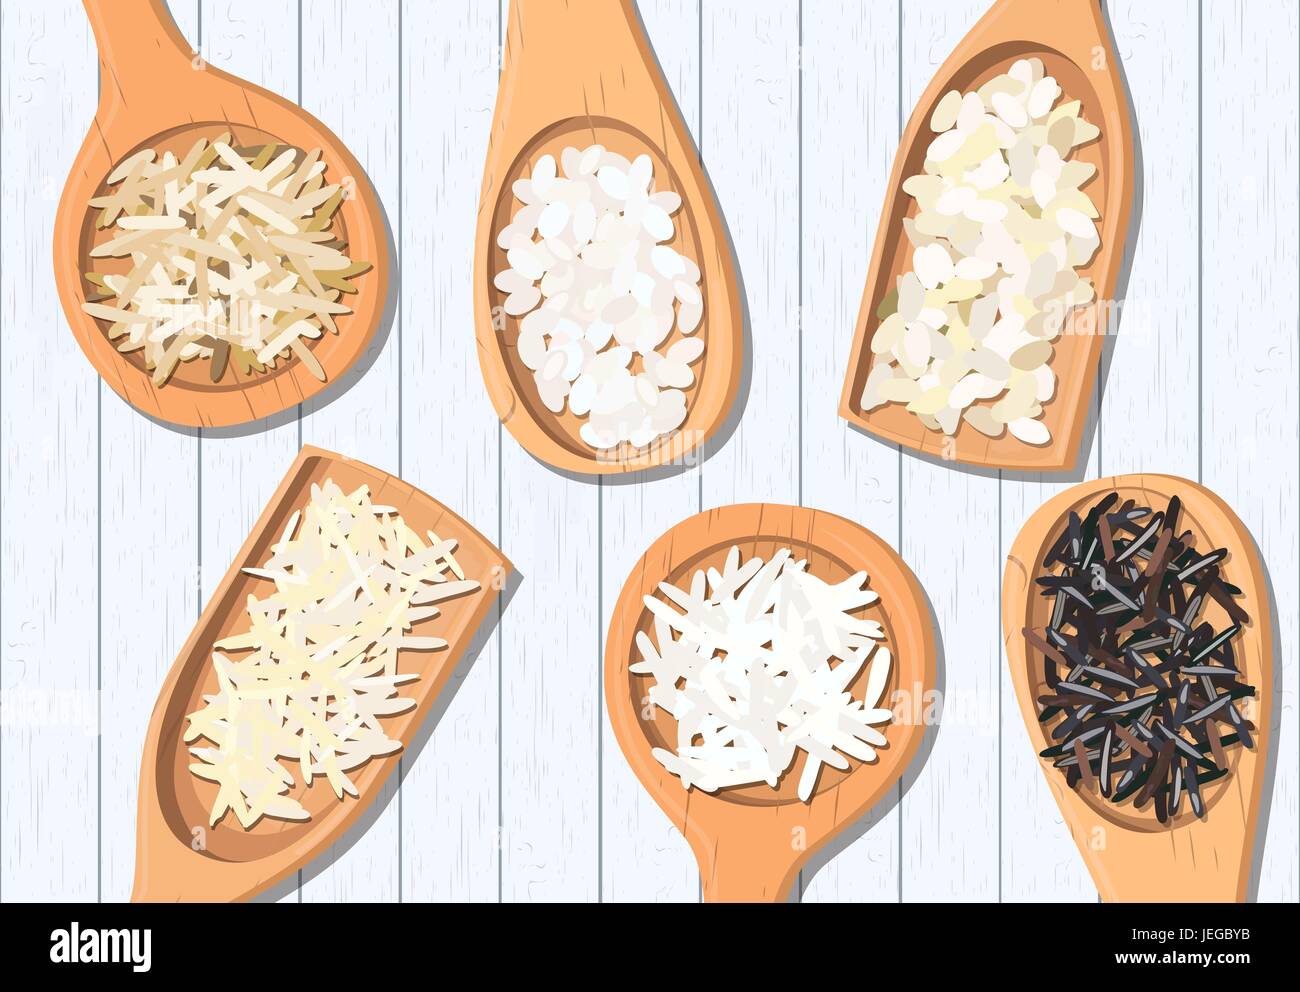 Différents types de riz dans des cuillères en bois. Sauvages, Basmati, jasmin, long brown, sushi, arborio Illustration de Vecteur